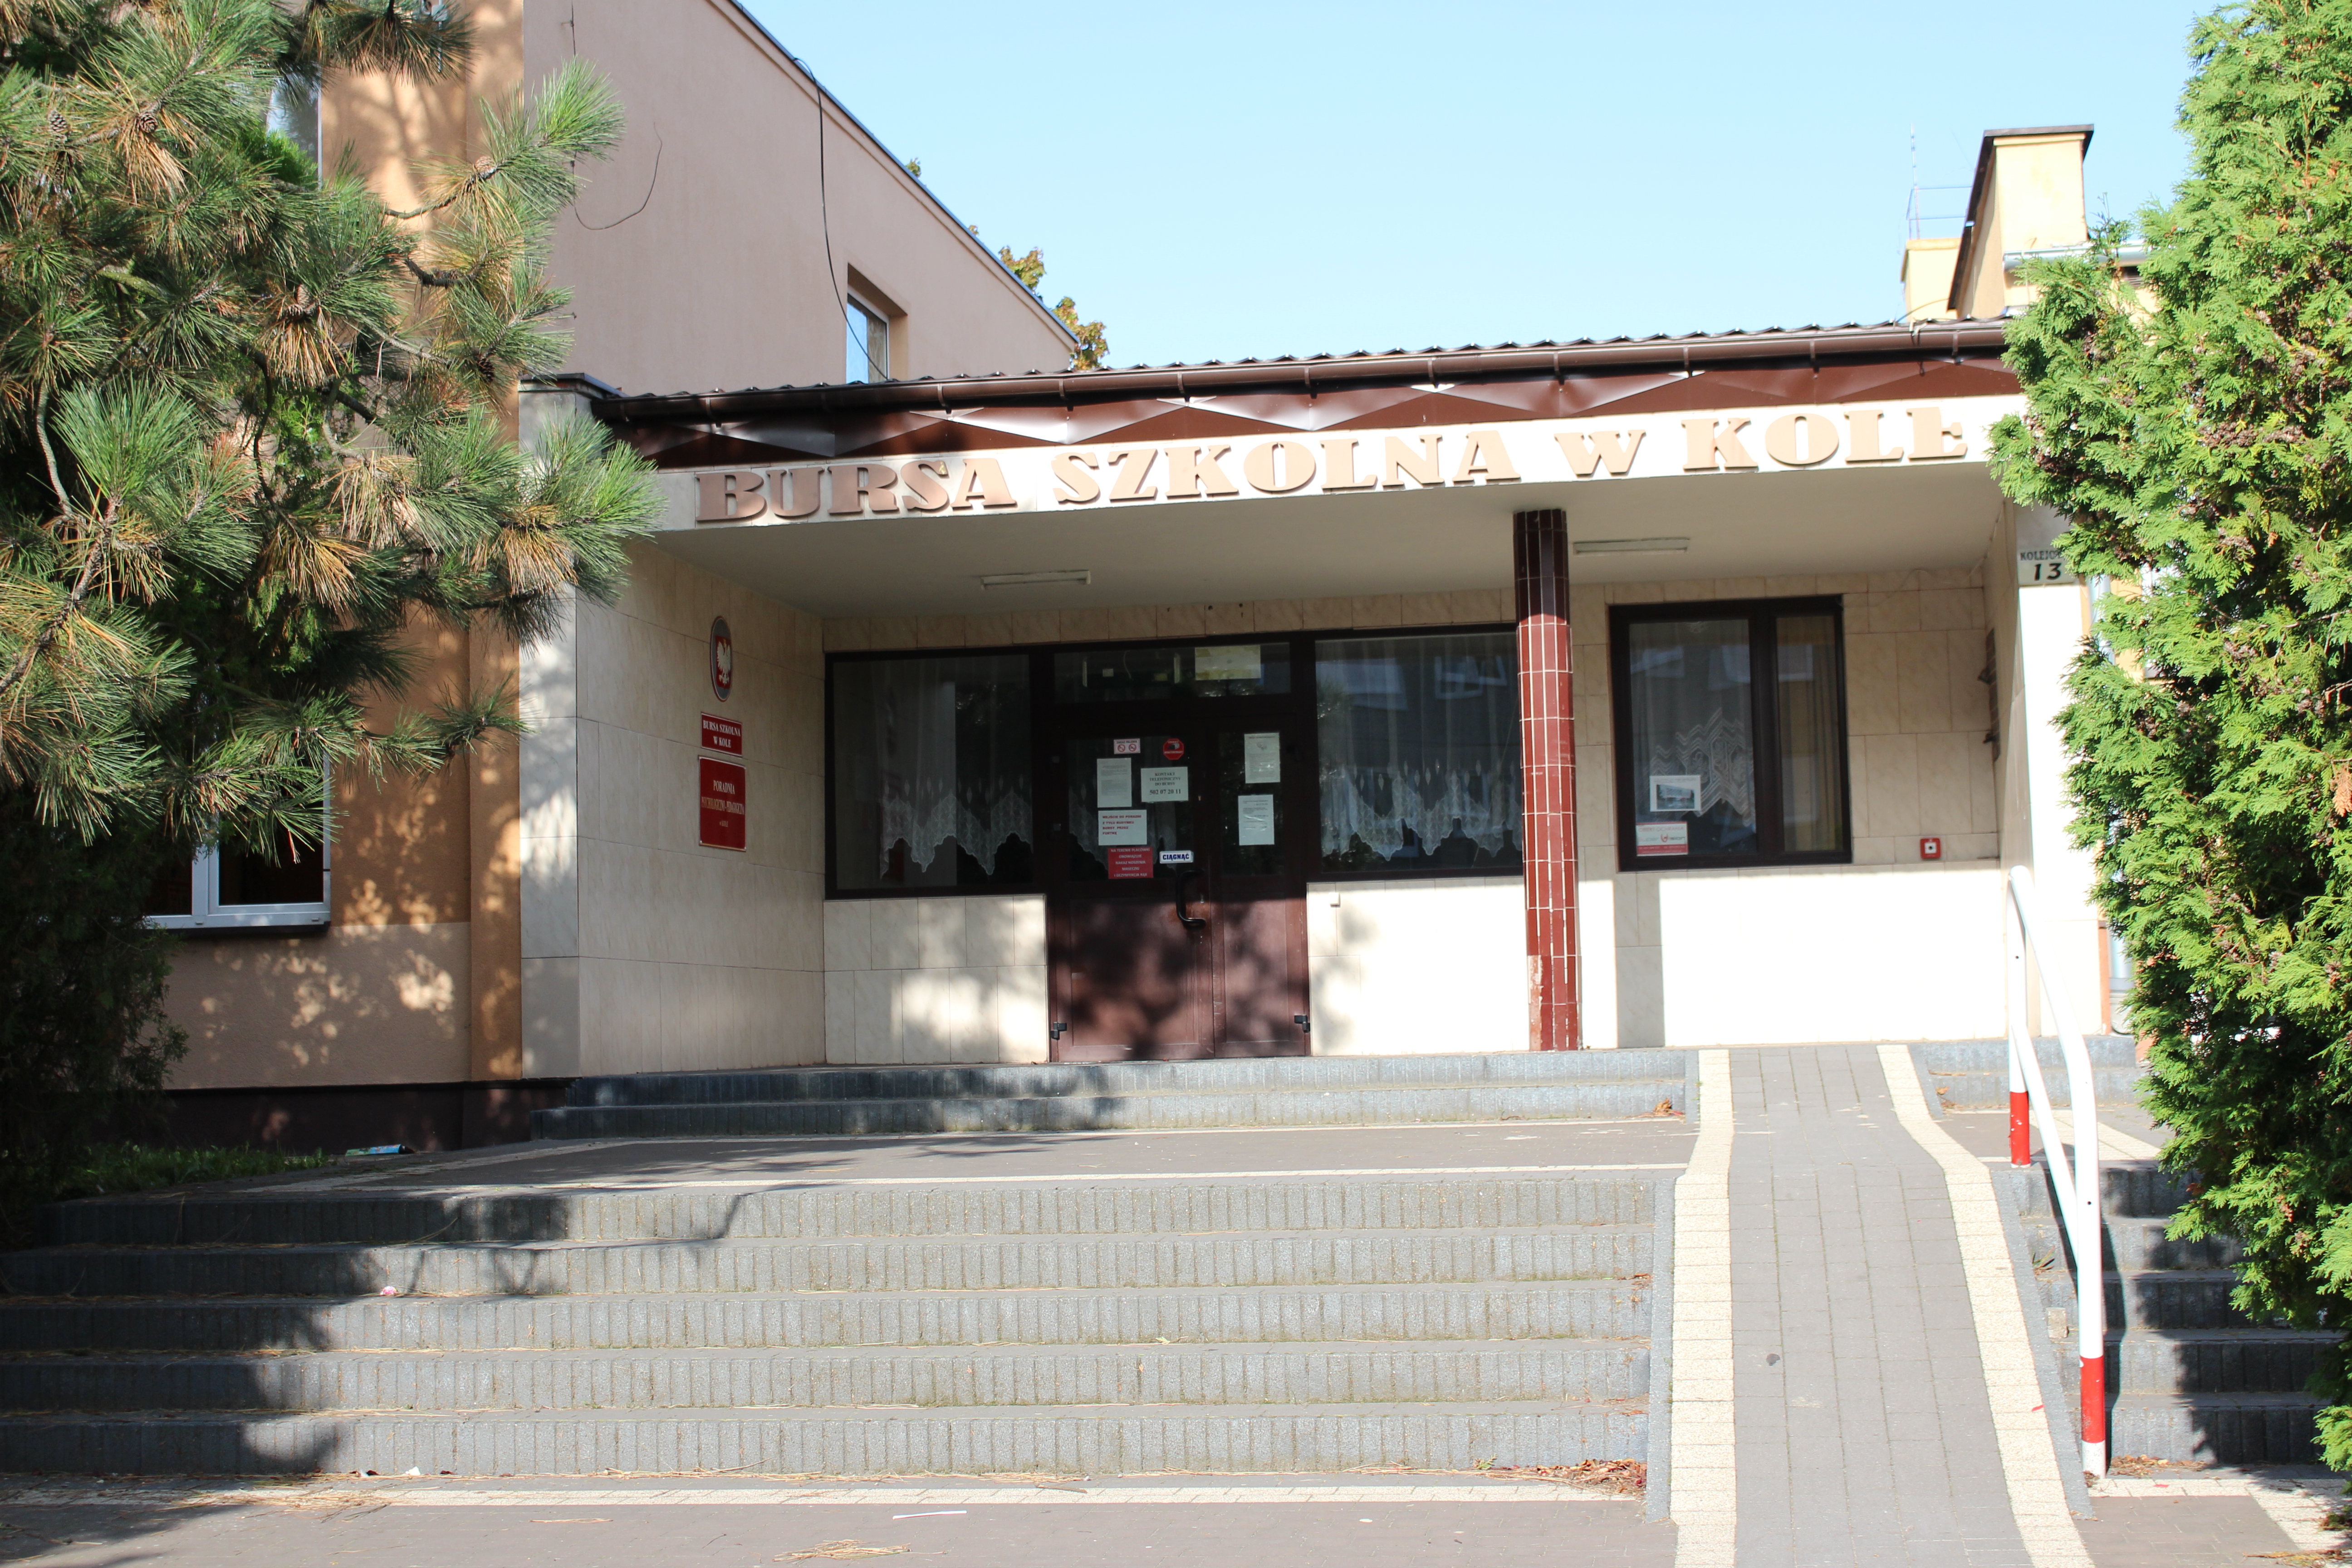 Zdjęcie przedstawia wejście do budynku bursy szkolnej.